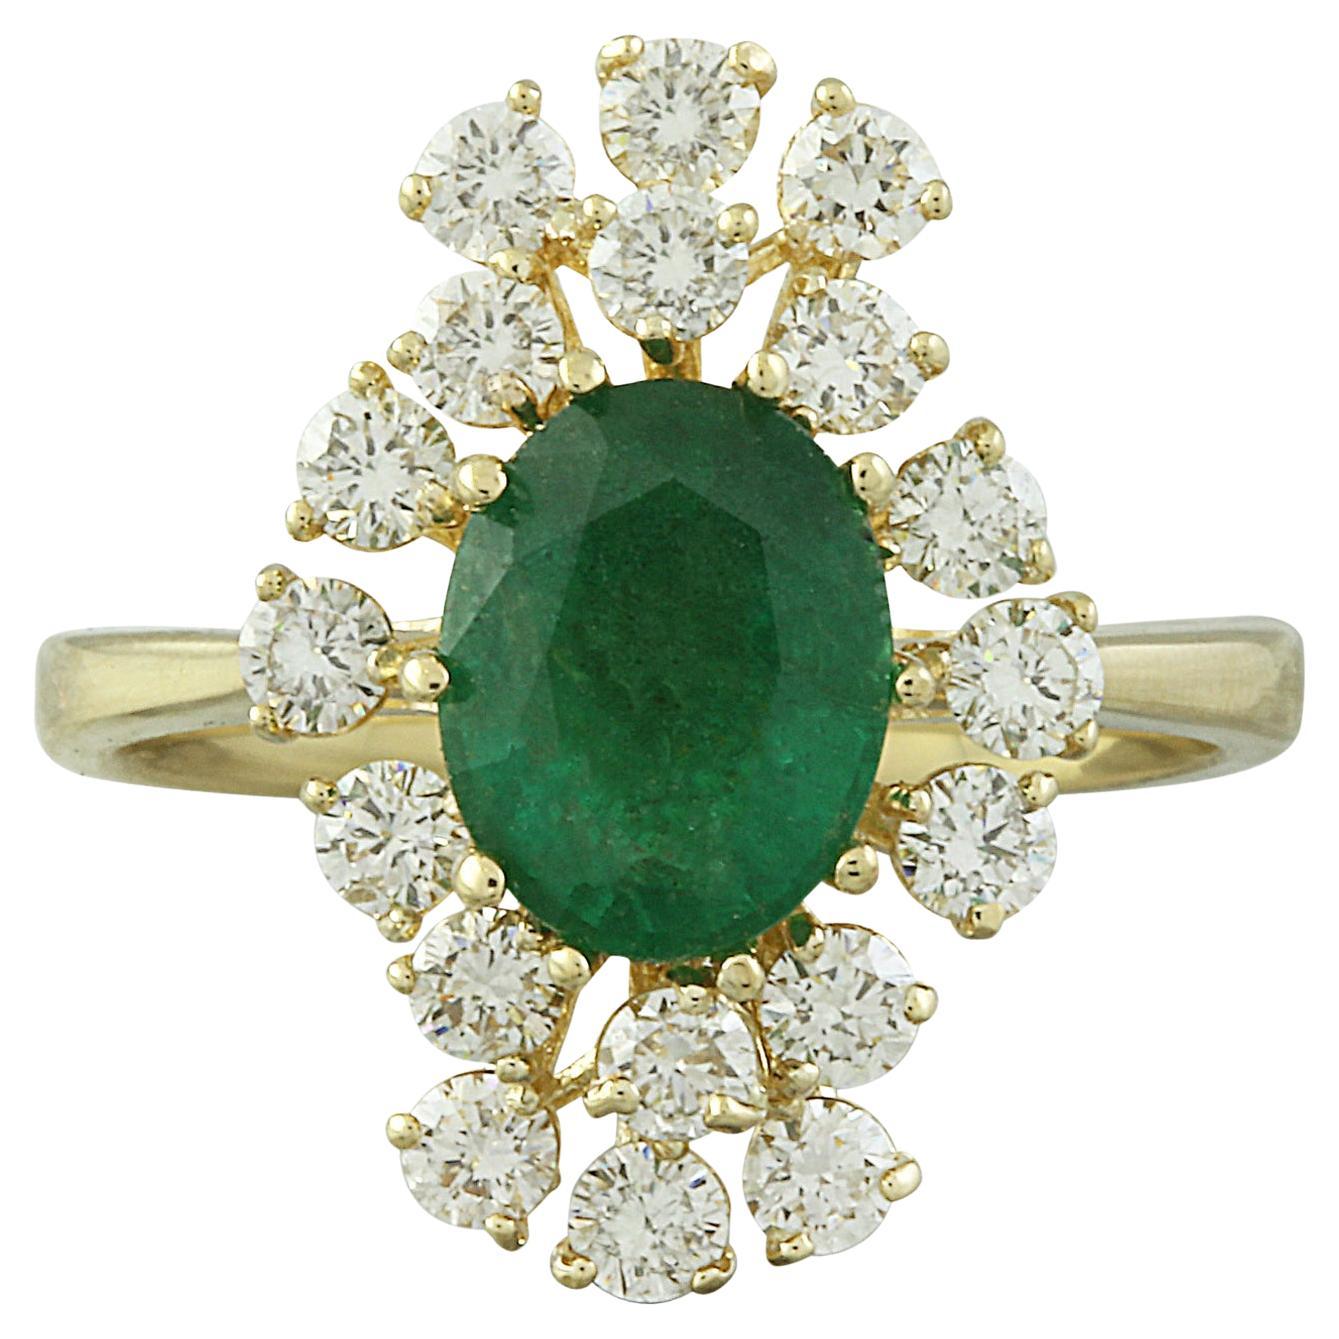 Exquisiter natürlicher Smaragd-Diamantring aus 14 Karat massivem Gelbgold 